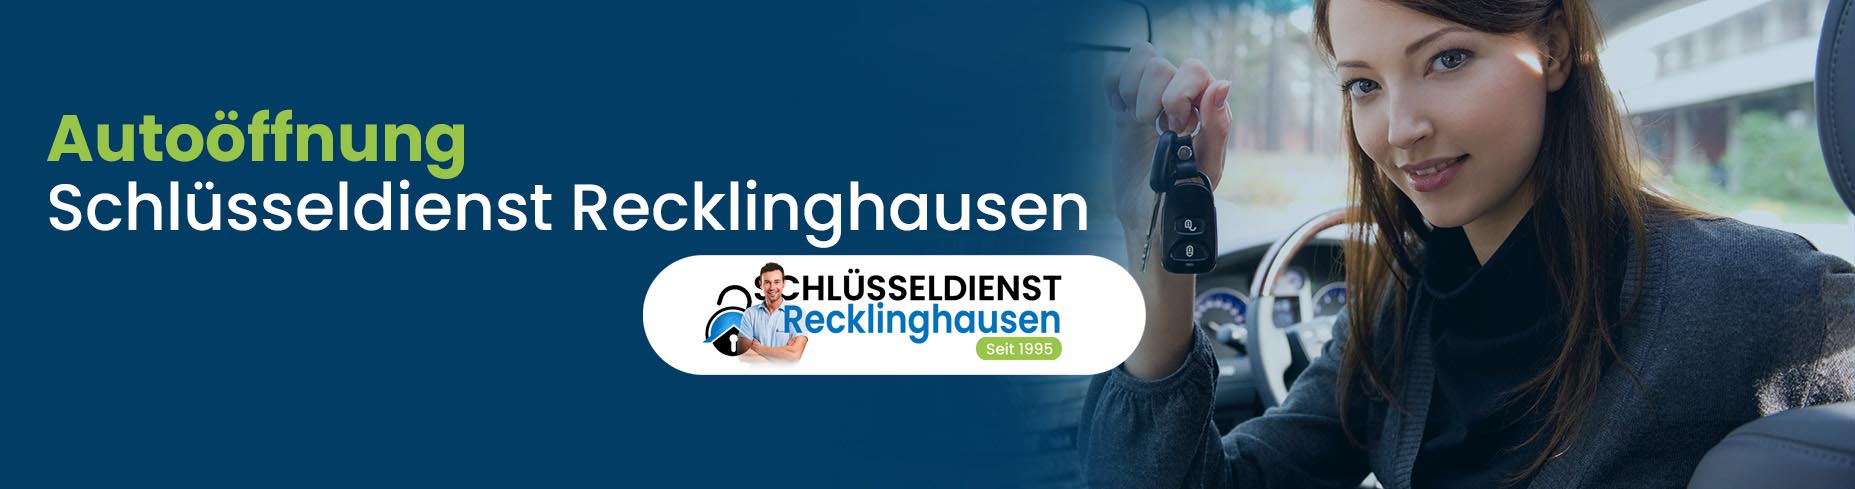 Autoöffnung - Schlüsseldienst Recklinghausen